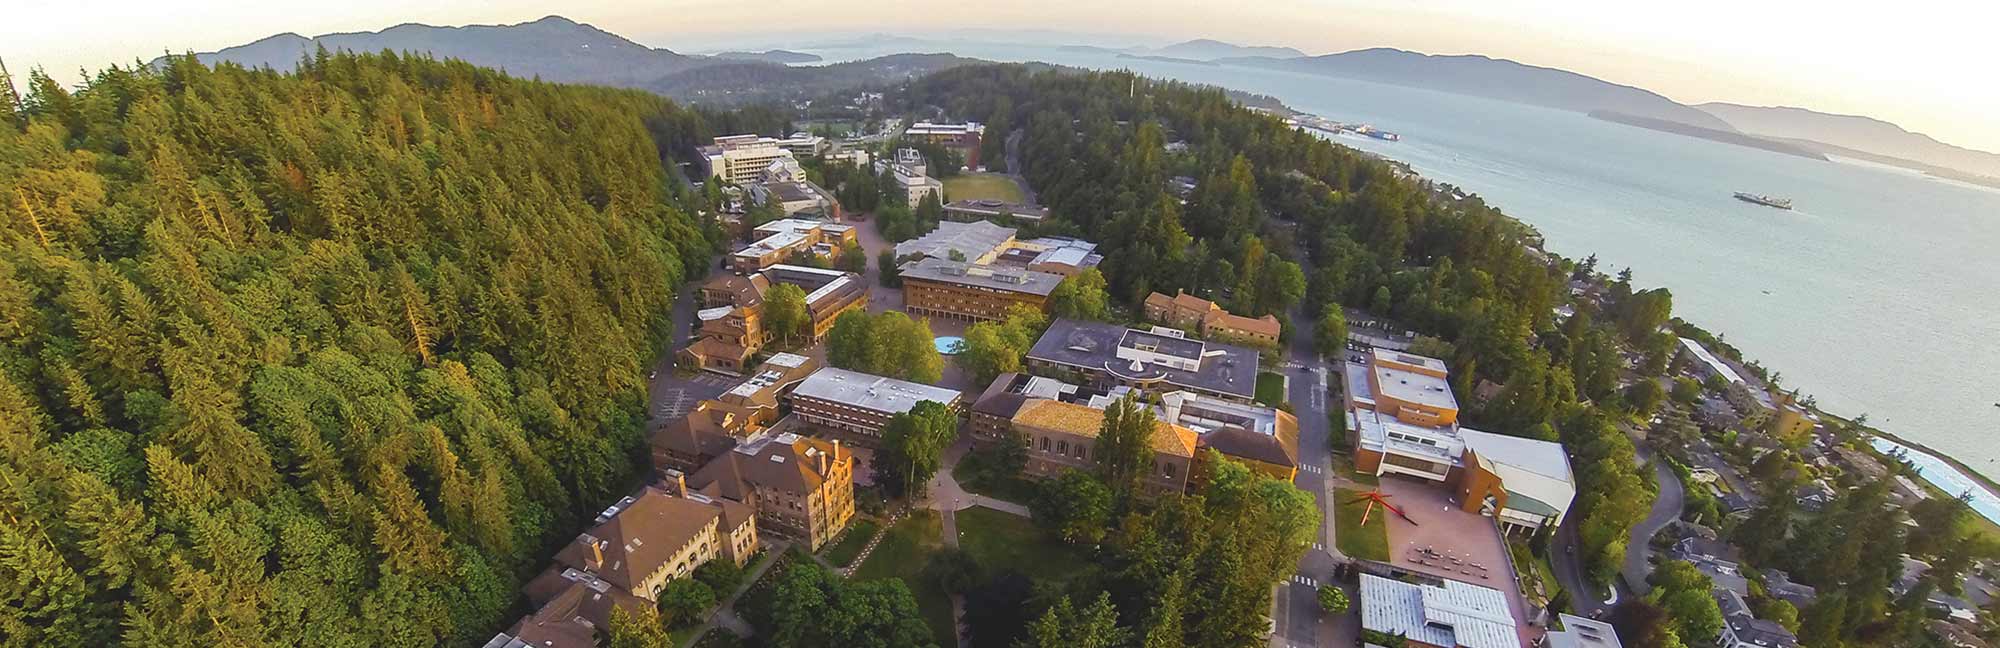 Western Washington University campuss